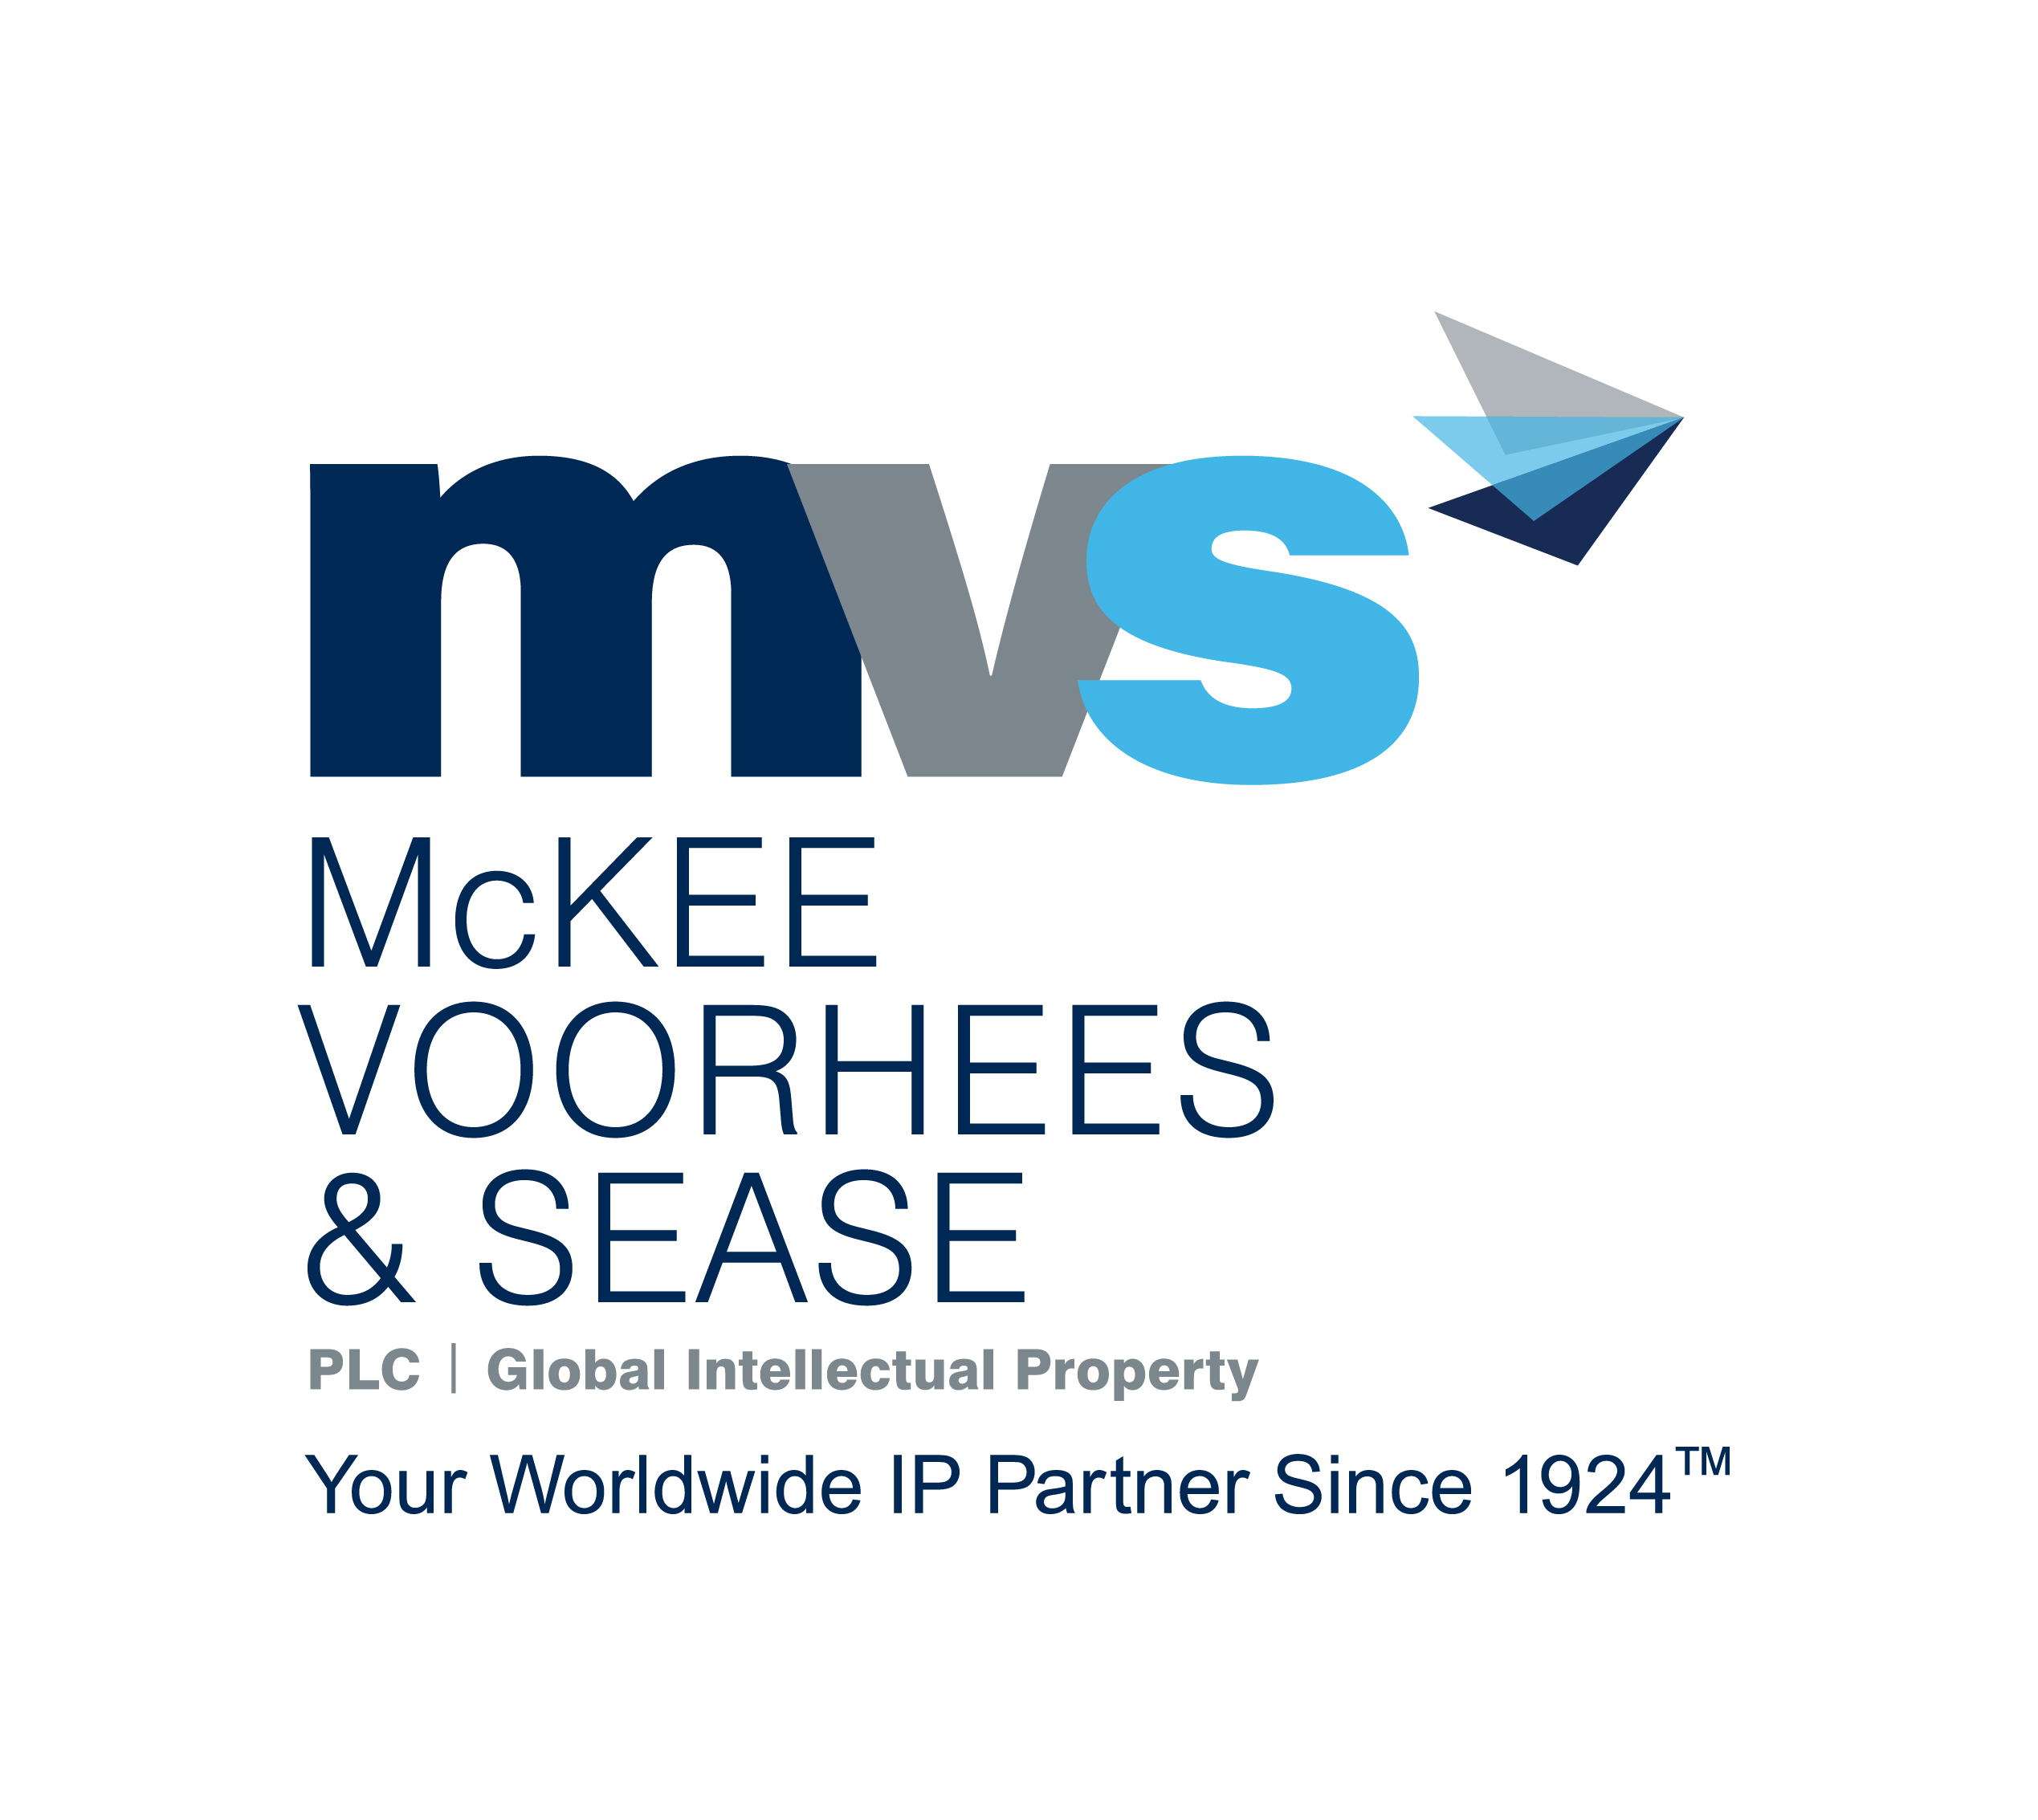 McKee, Voorhees & Sease, PLC